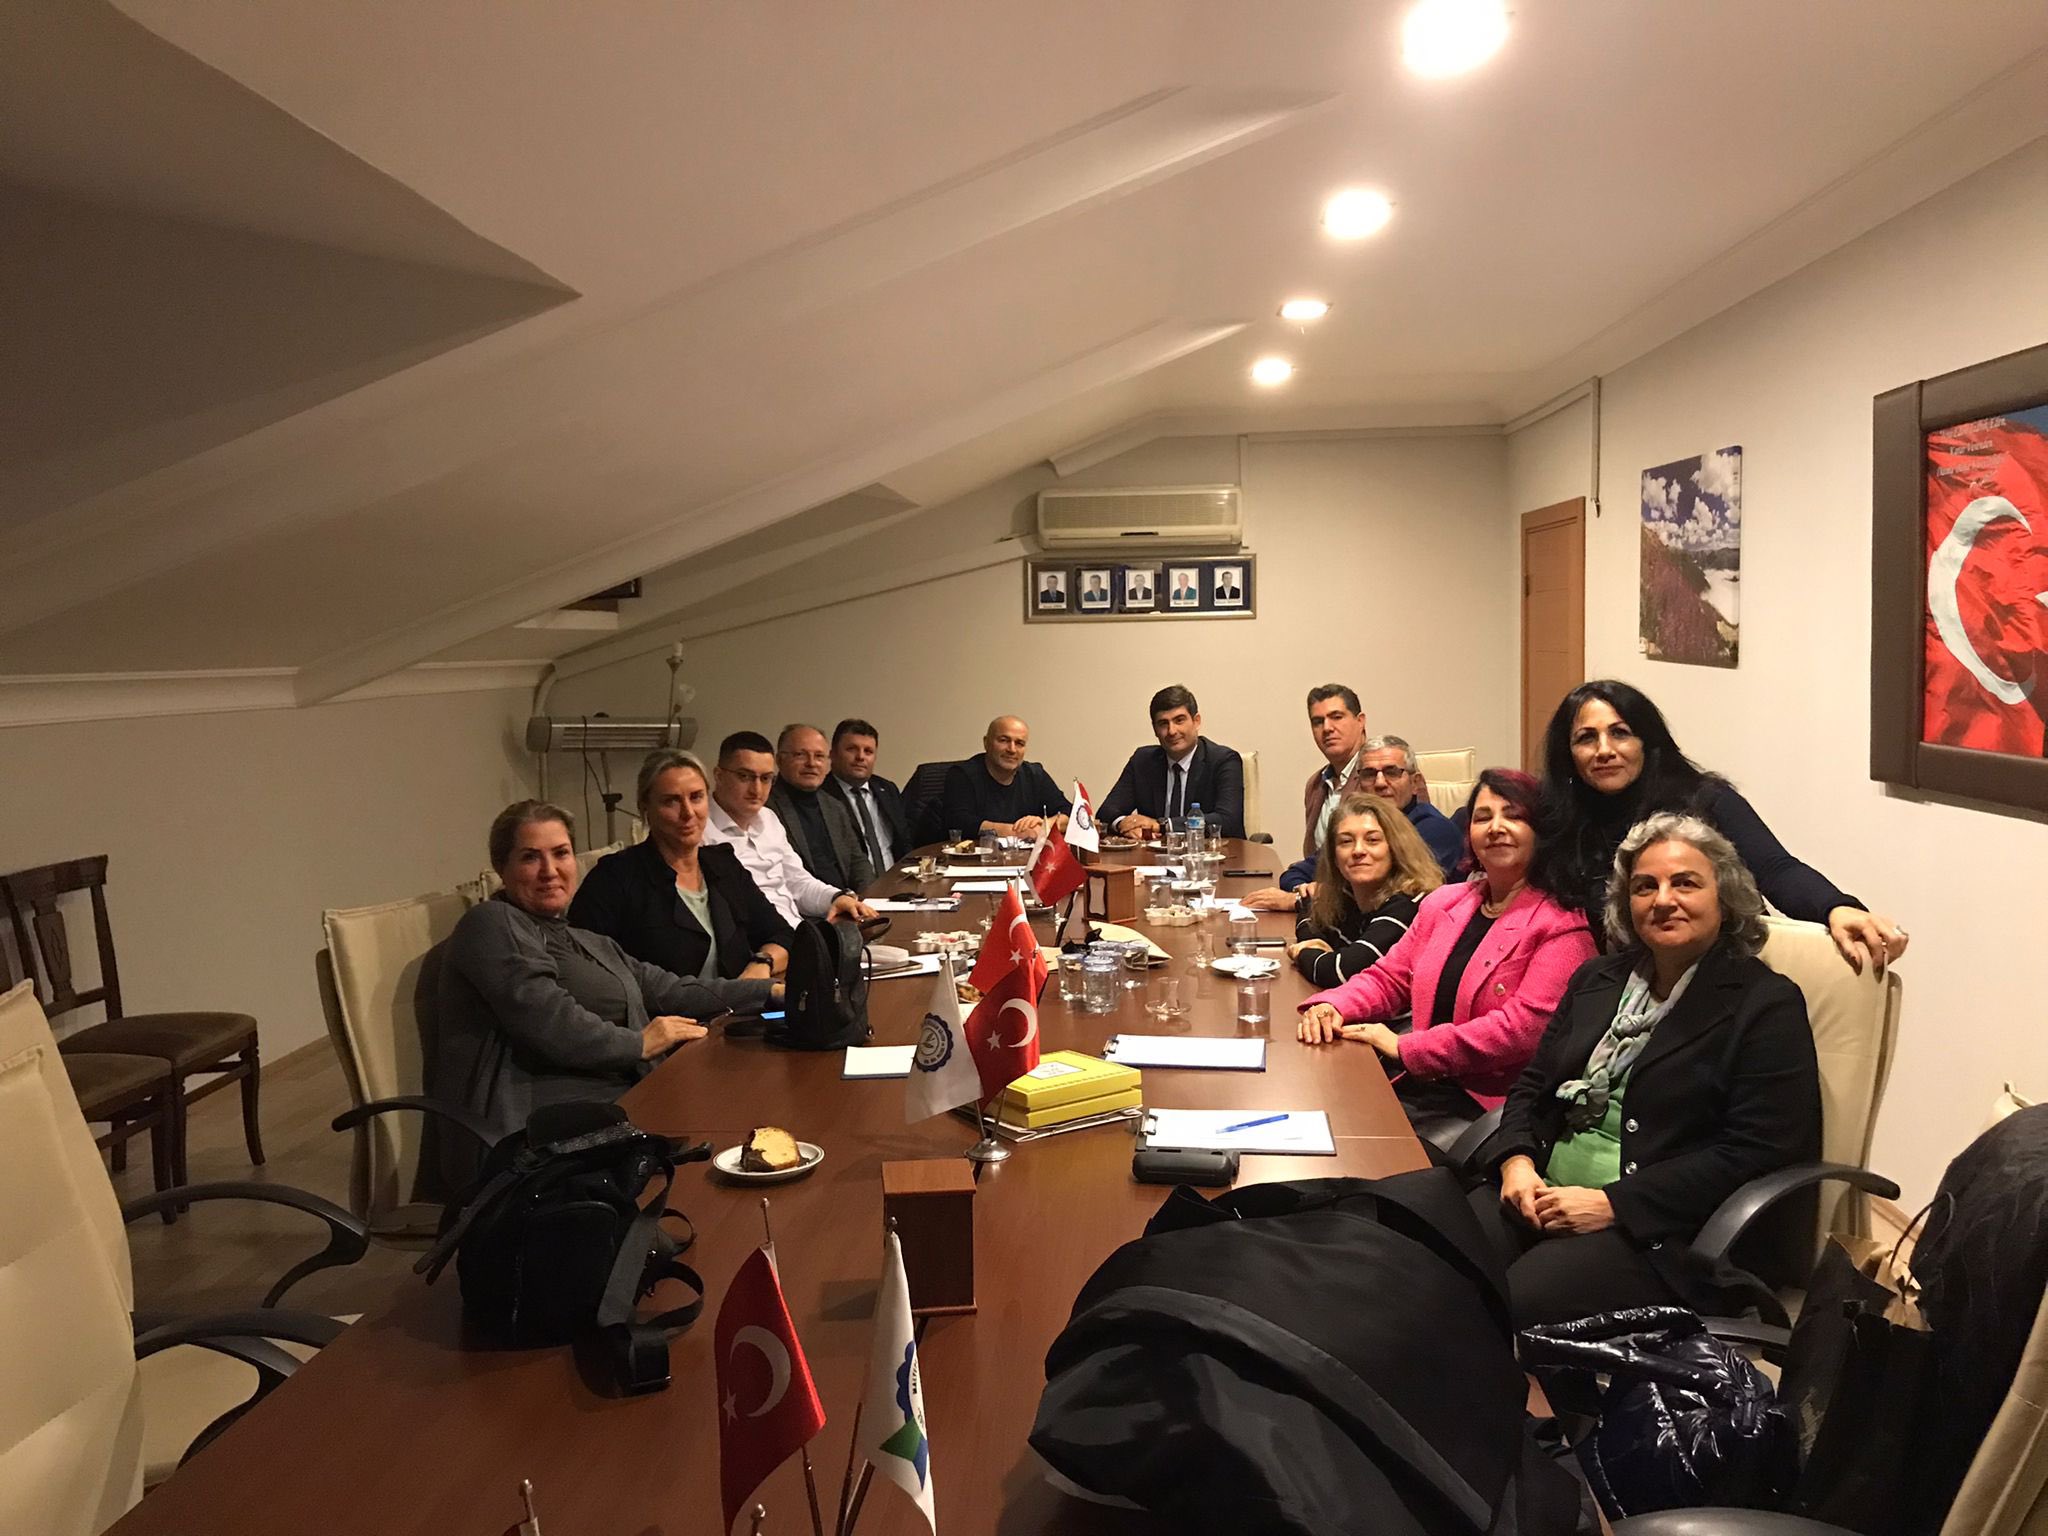 İl Başkan Yardımcımız Alparslan Berber, Maltepe İlçe Başkanımız Emrah Turgut ve teşkilat mensuplarımız ile birlikte Maltepe Rizeliler Derneği'ni ziyaret etti.